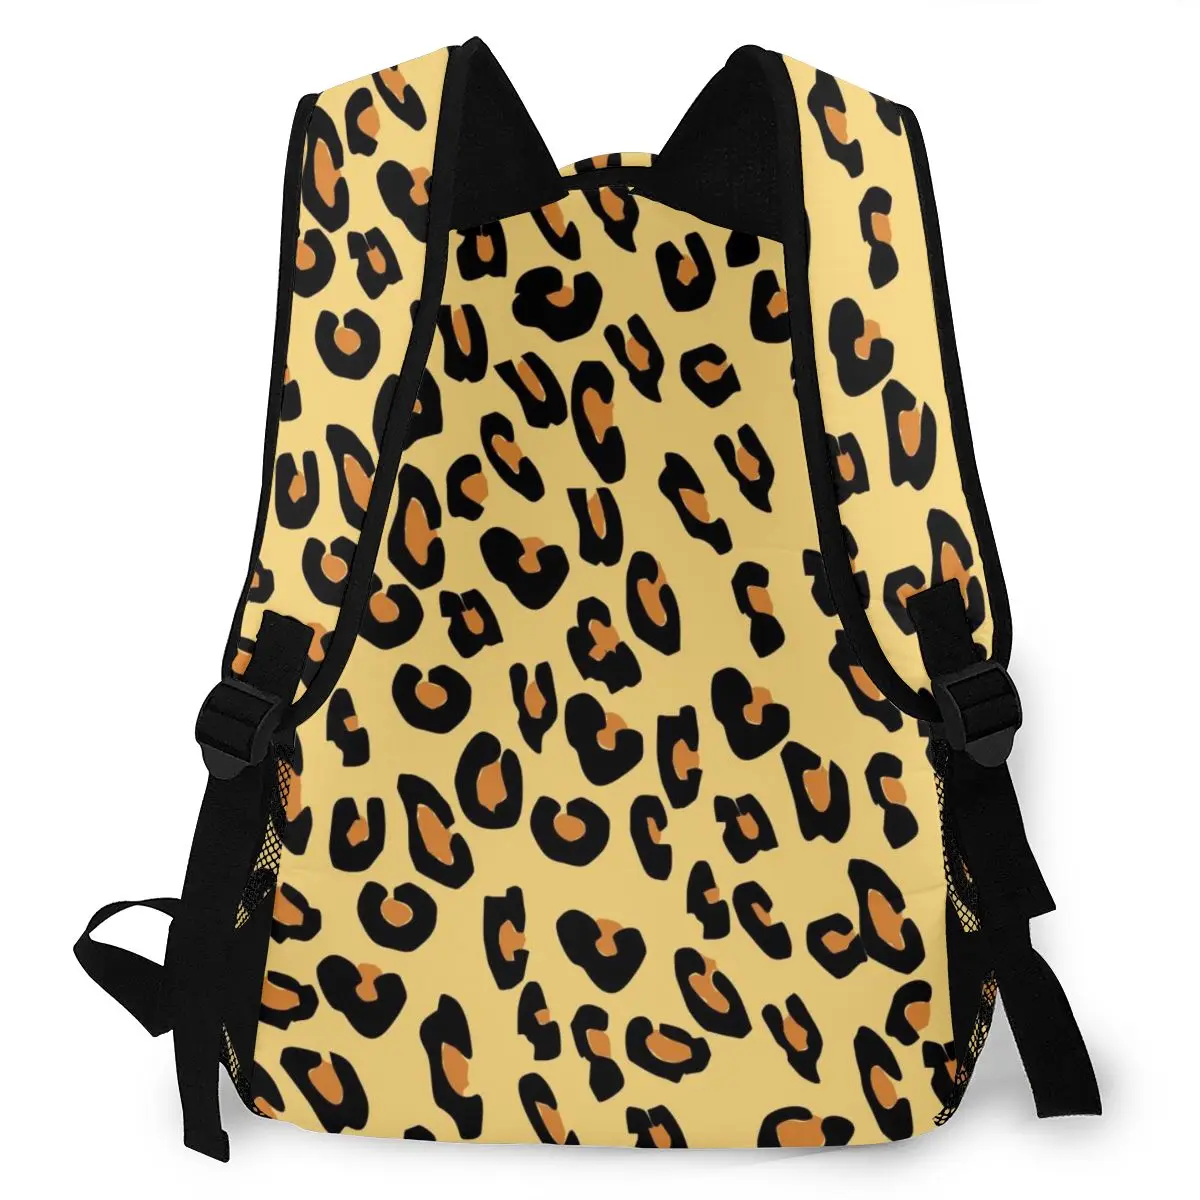 Женский рюкзак с леопардовым принтом школьный для девочек-подростков 2020 | Багаж и